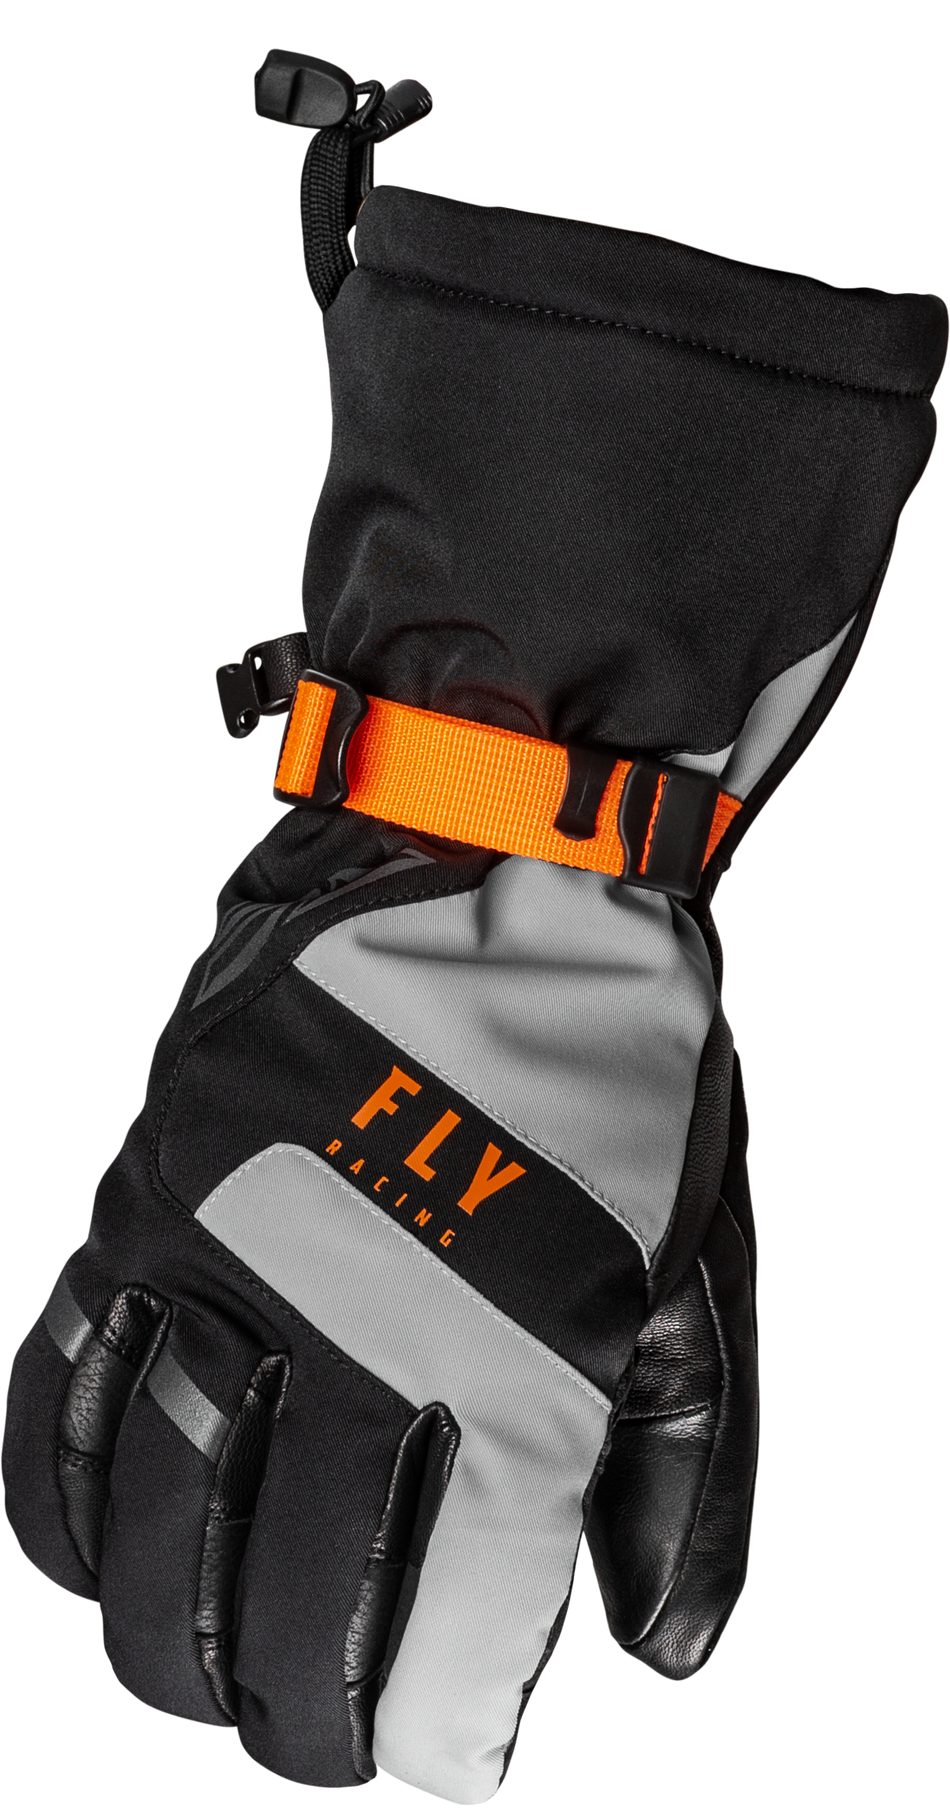 FLY RACING Highland Gloves Black/Grey/Orange Lg 363-3952L